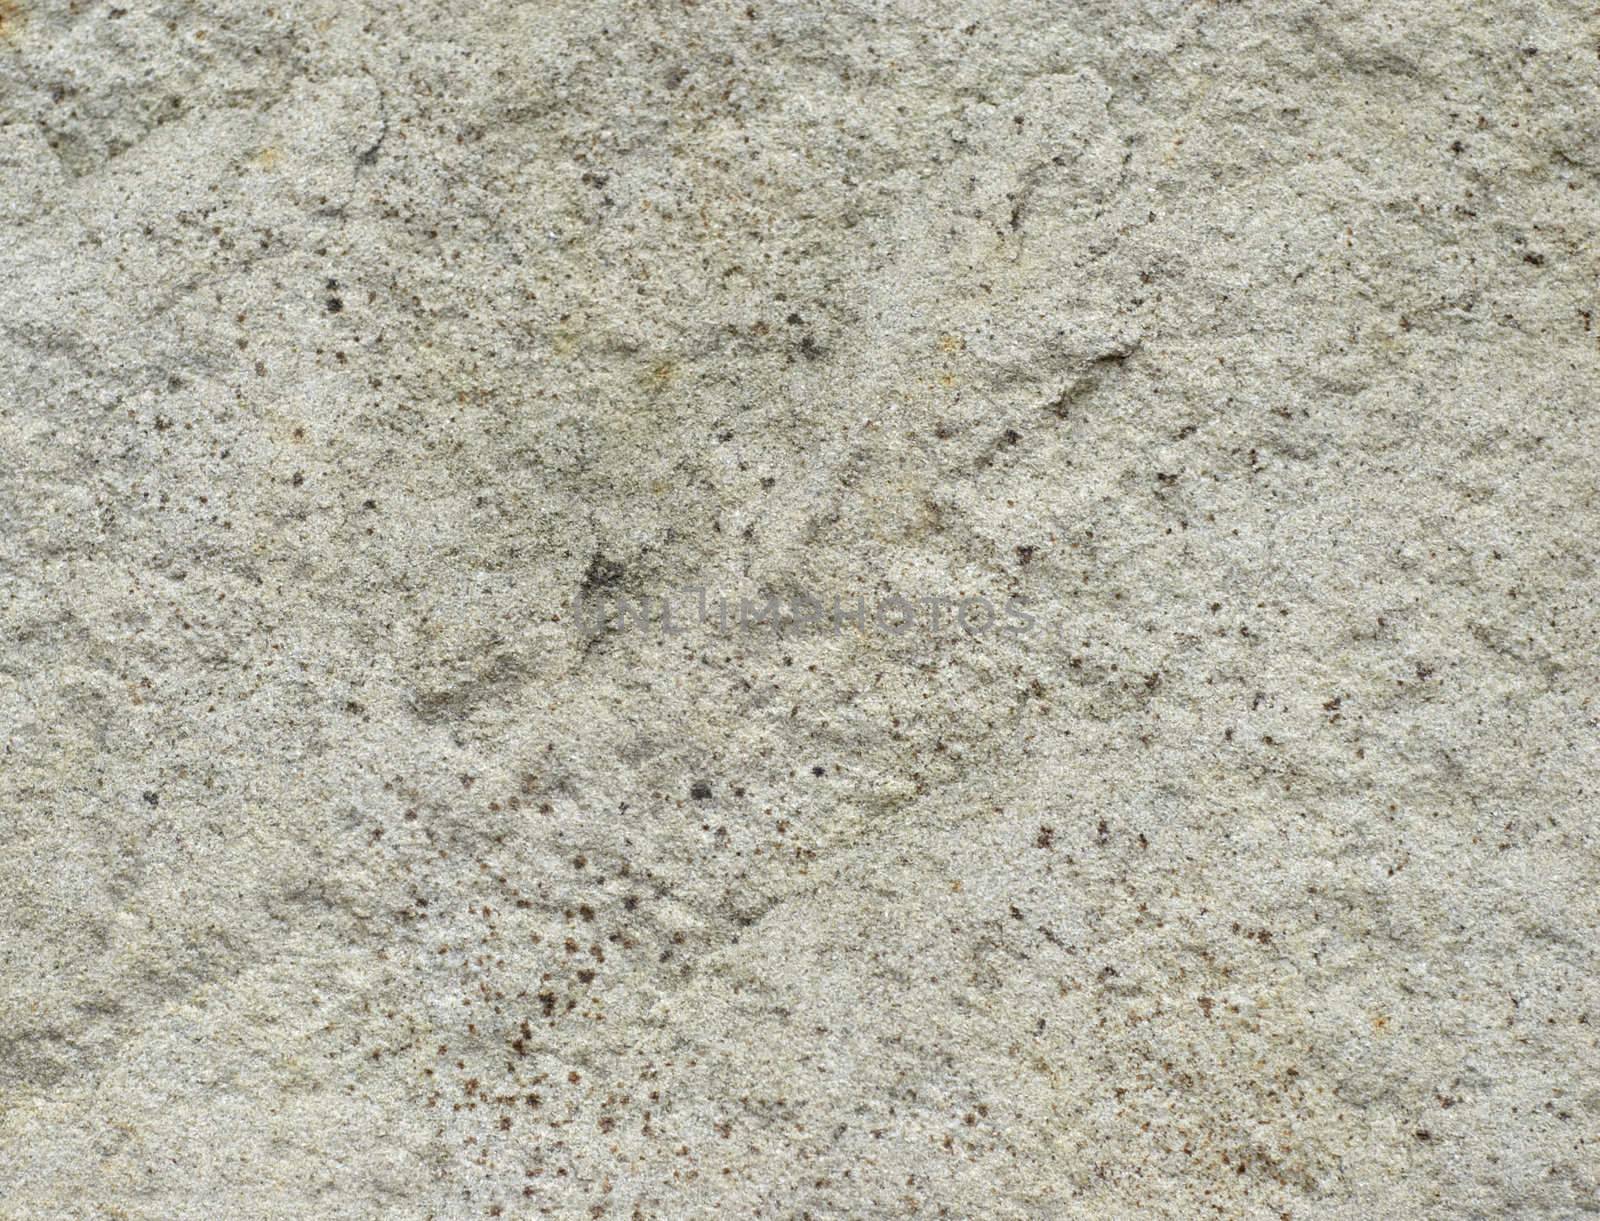 grunge concrete texture, very rough grain, non smooth surface